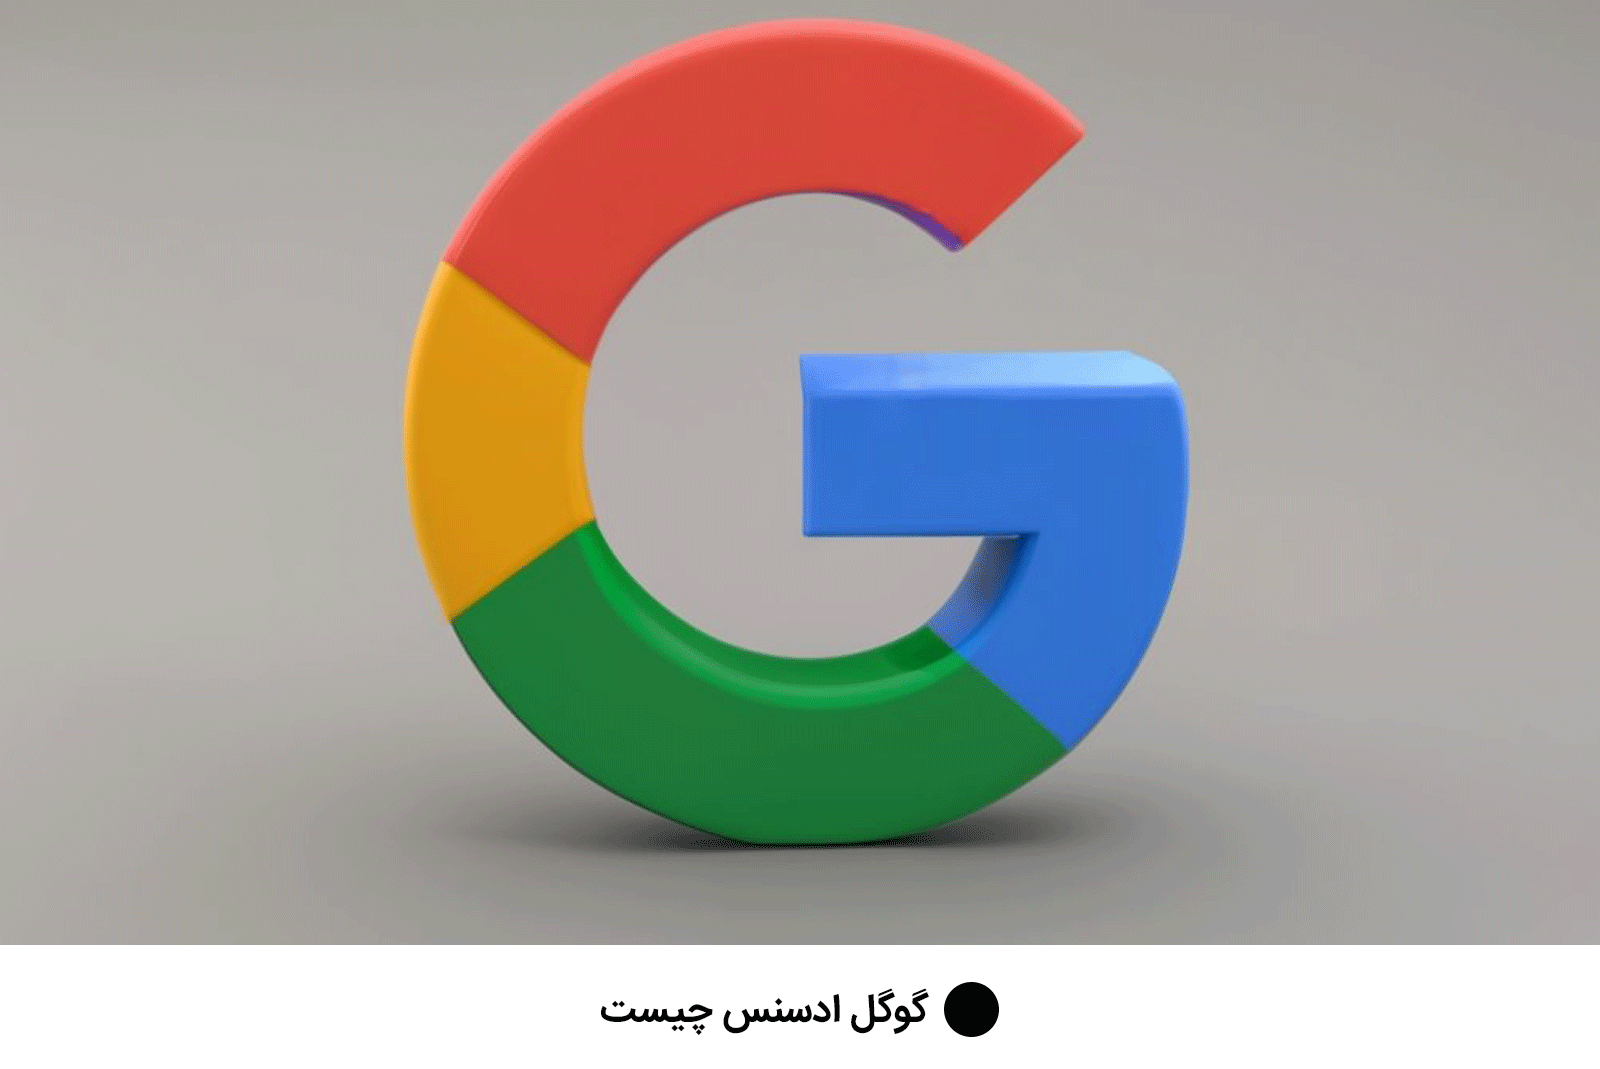 گوگل ادسنس چیست